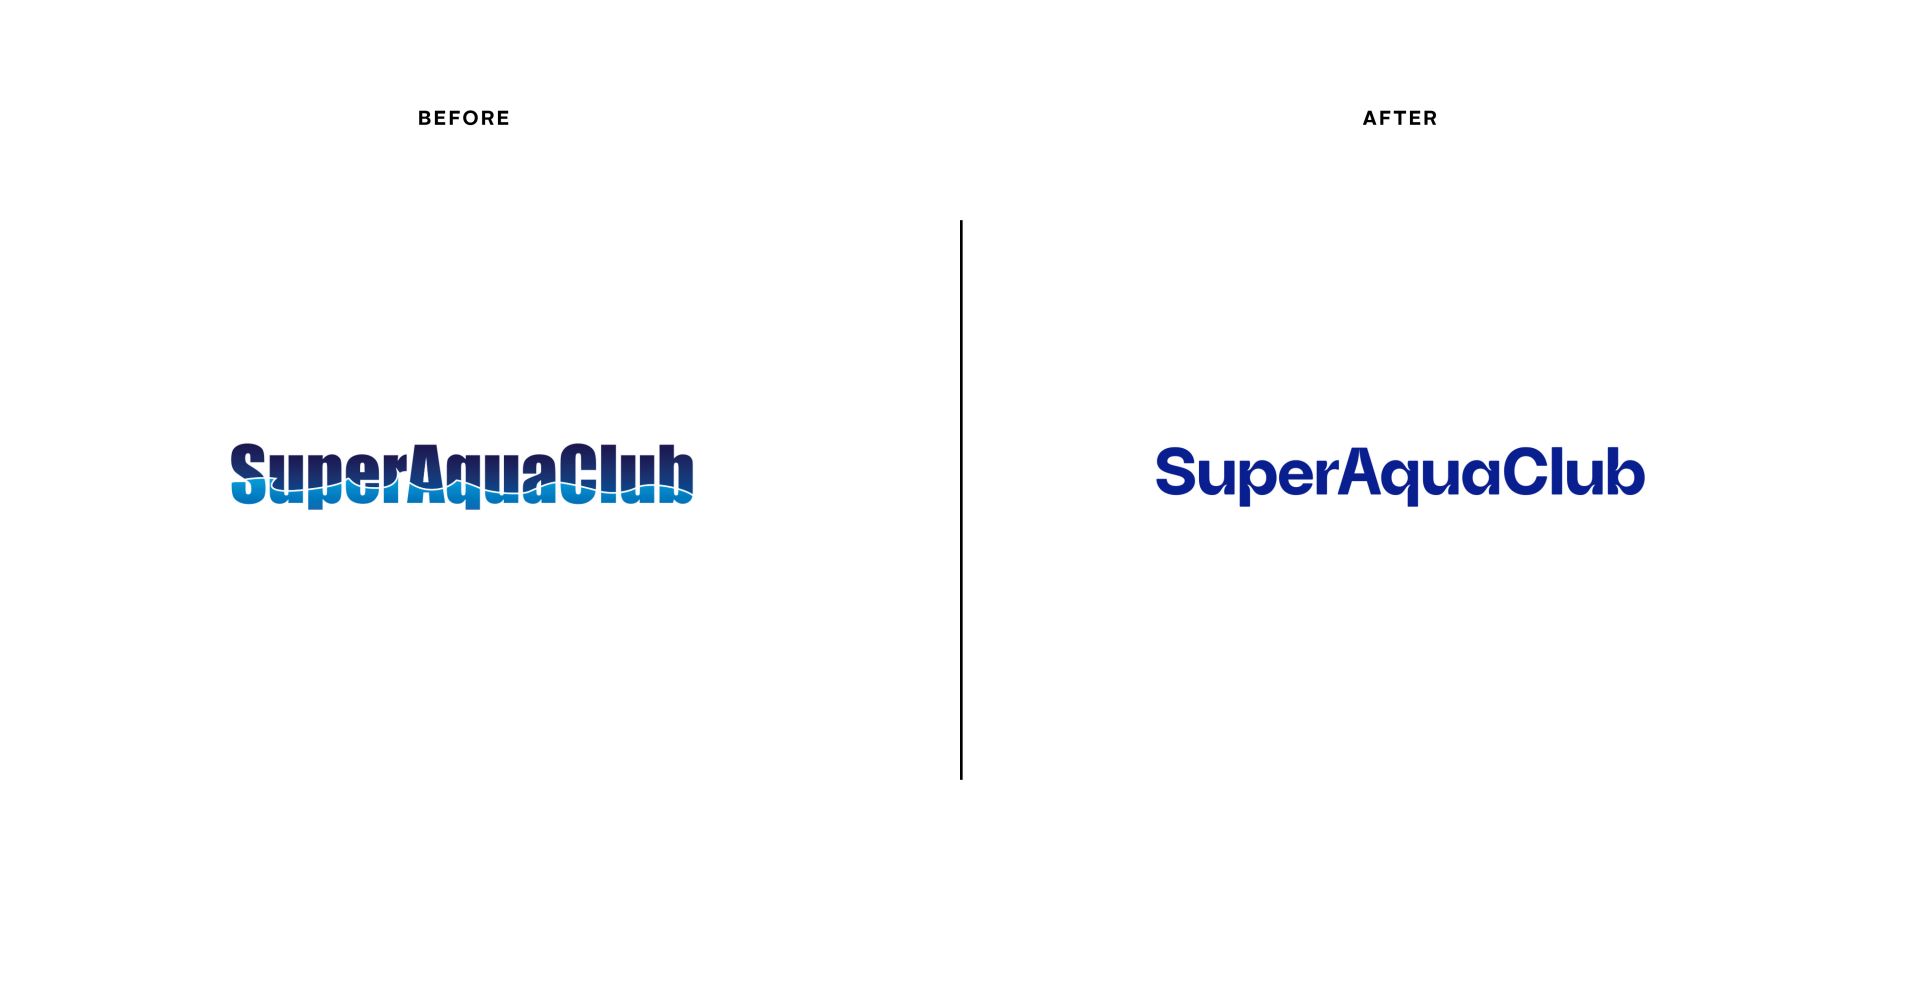 Super Aqua Club (branding)